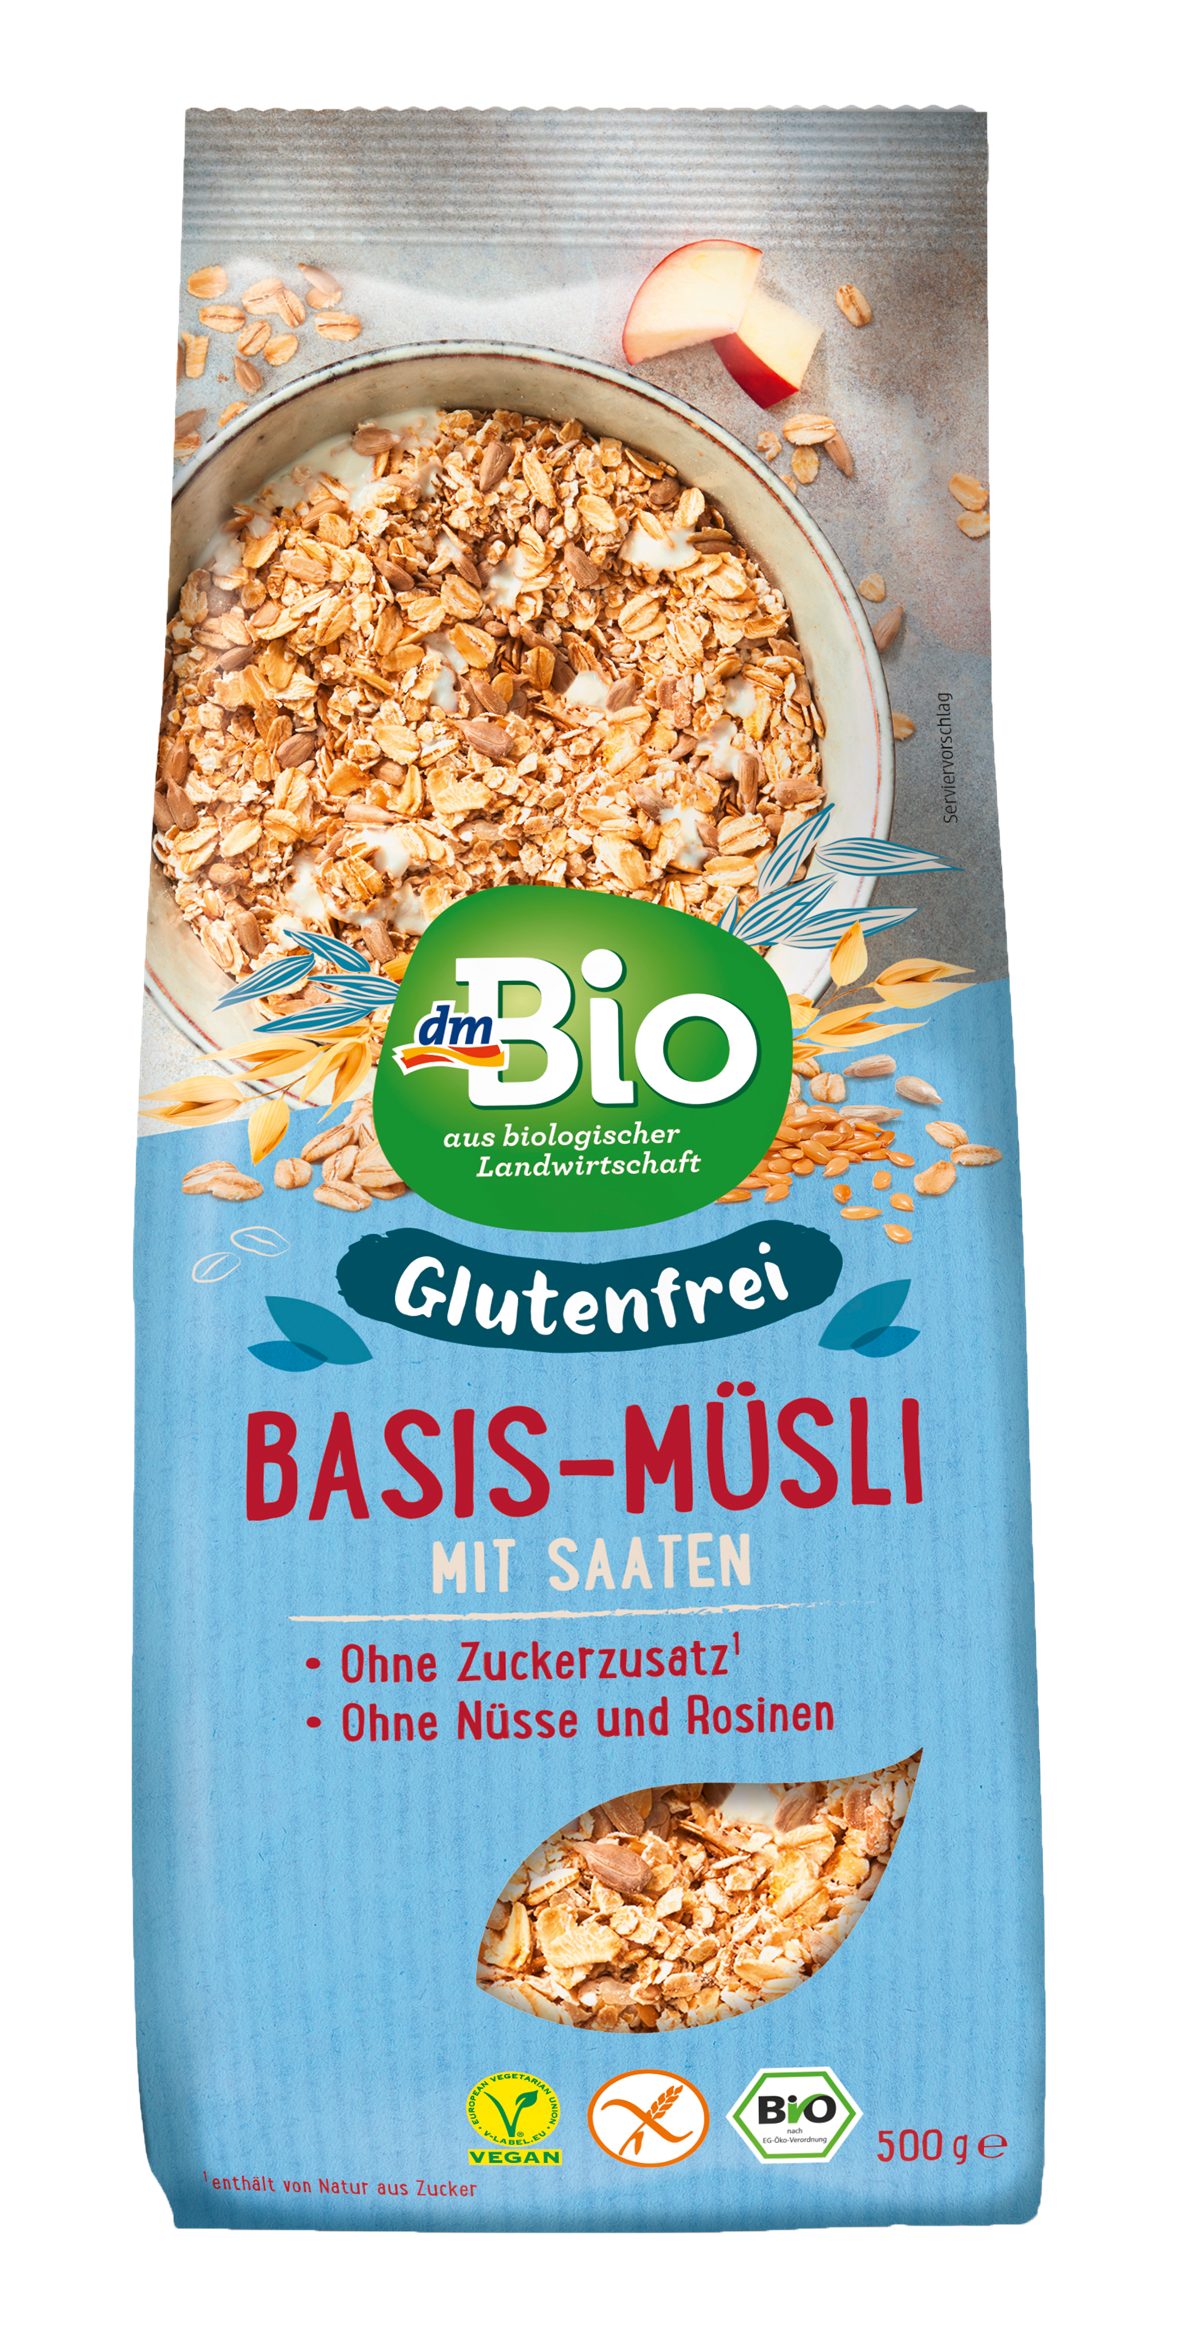 dmBio glutenfreies Basis-Müsli mit Saaten (500 g): 2,65 €